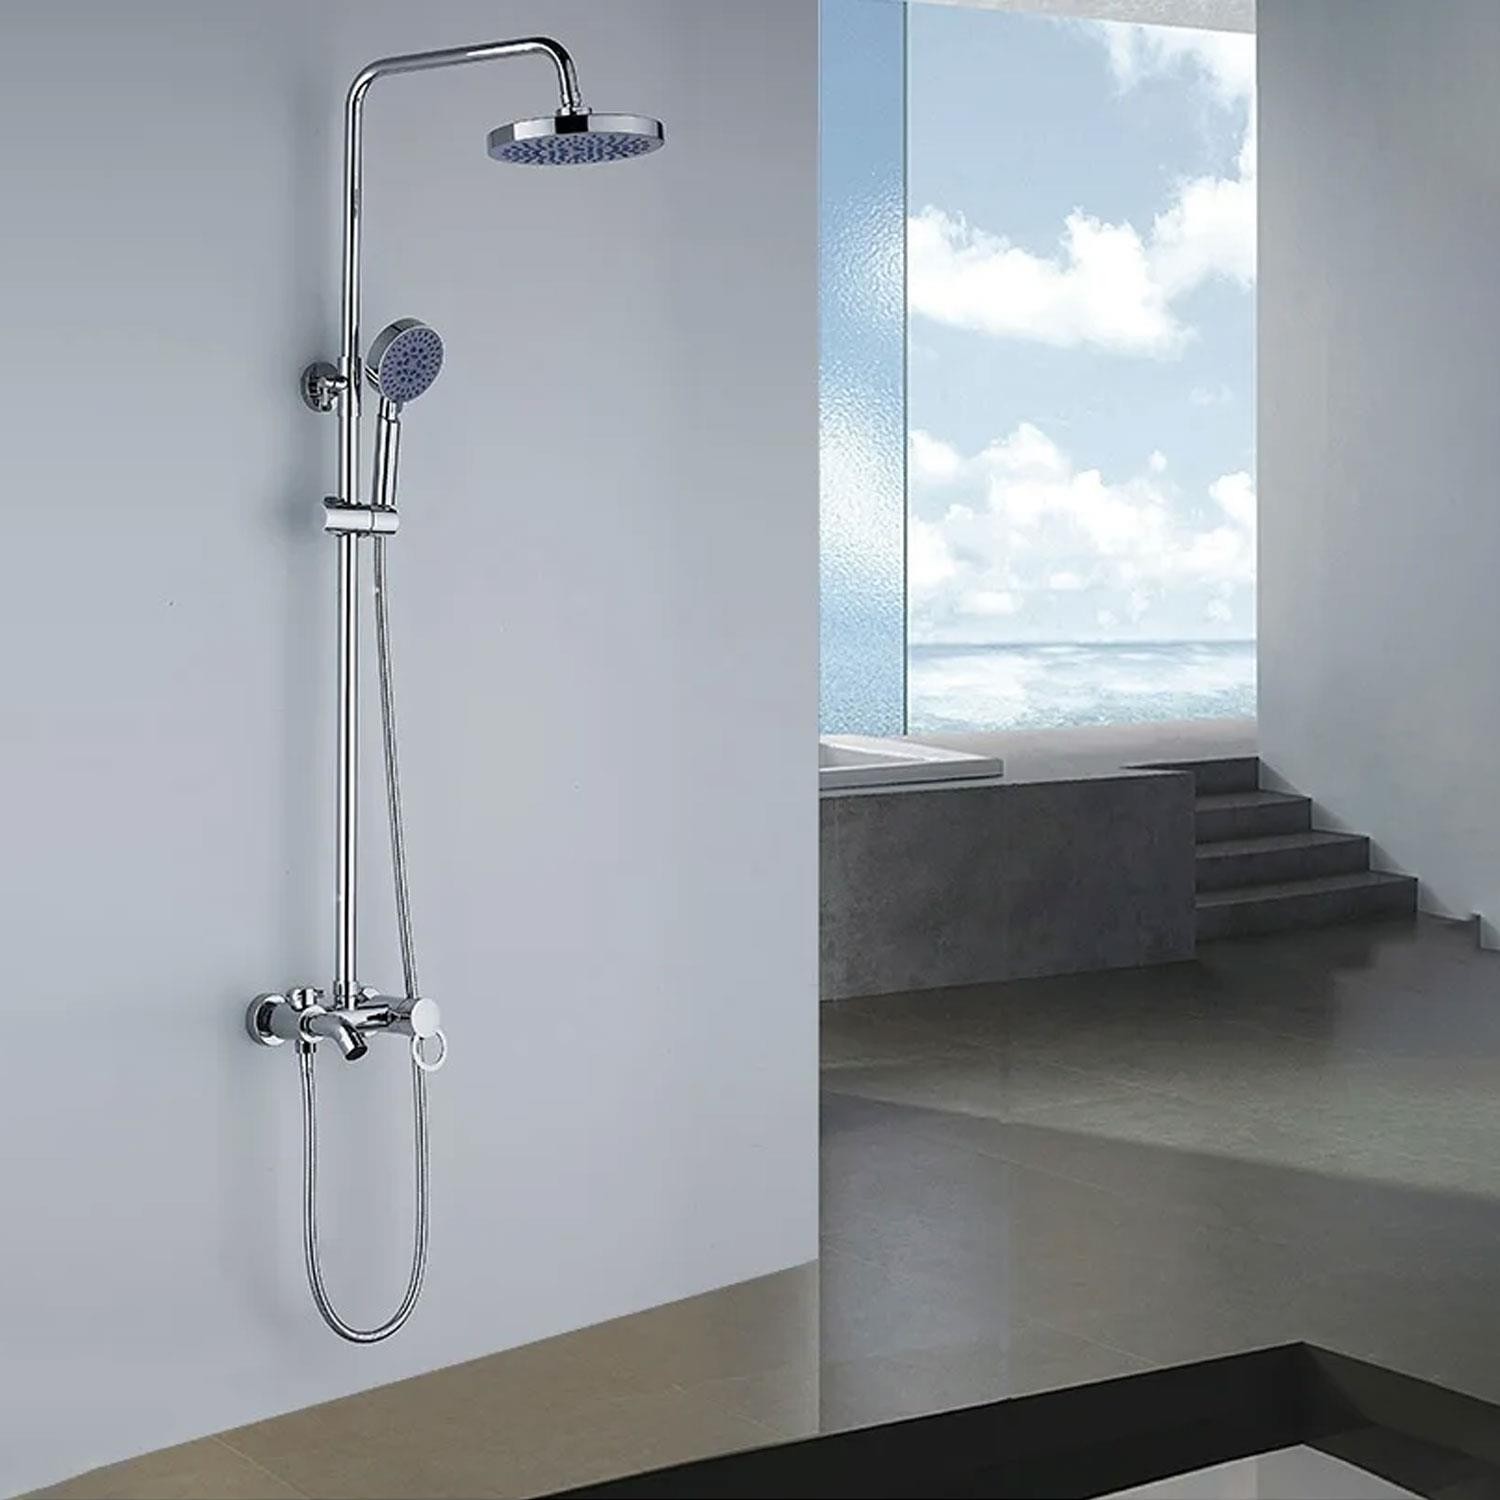 Robot Tepe Duş Seti Takımı Shower Yağmurlama Yuvarlak Banyo Masaj Duş Başlığı Sistemi Mor Krom